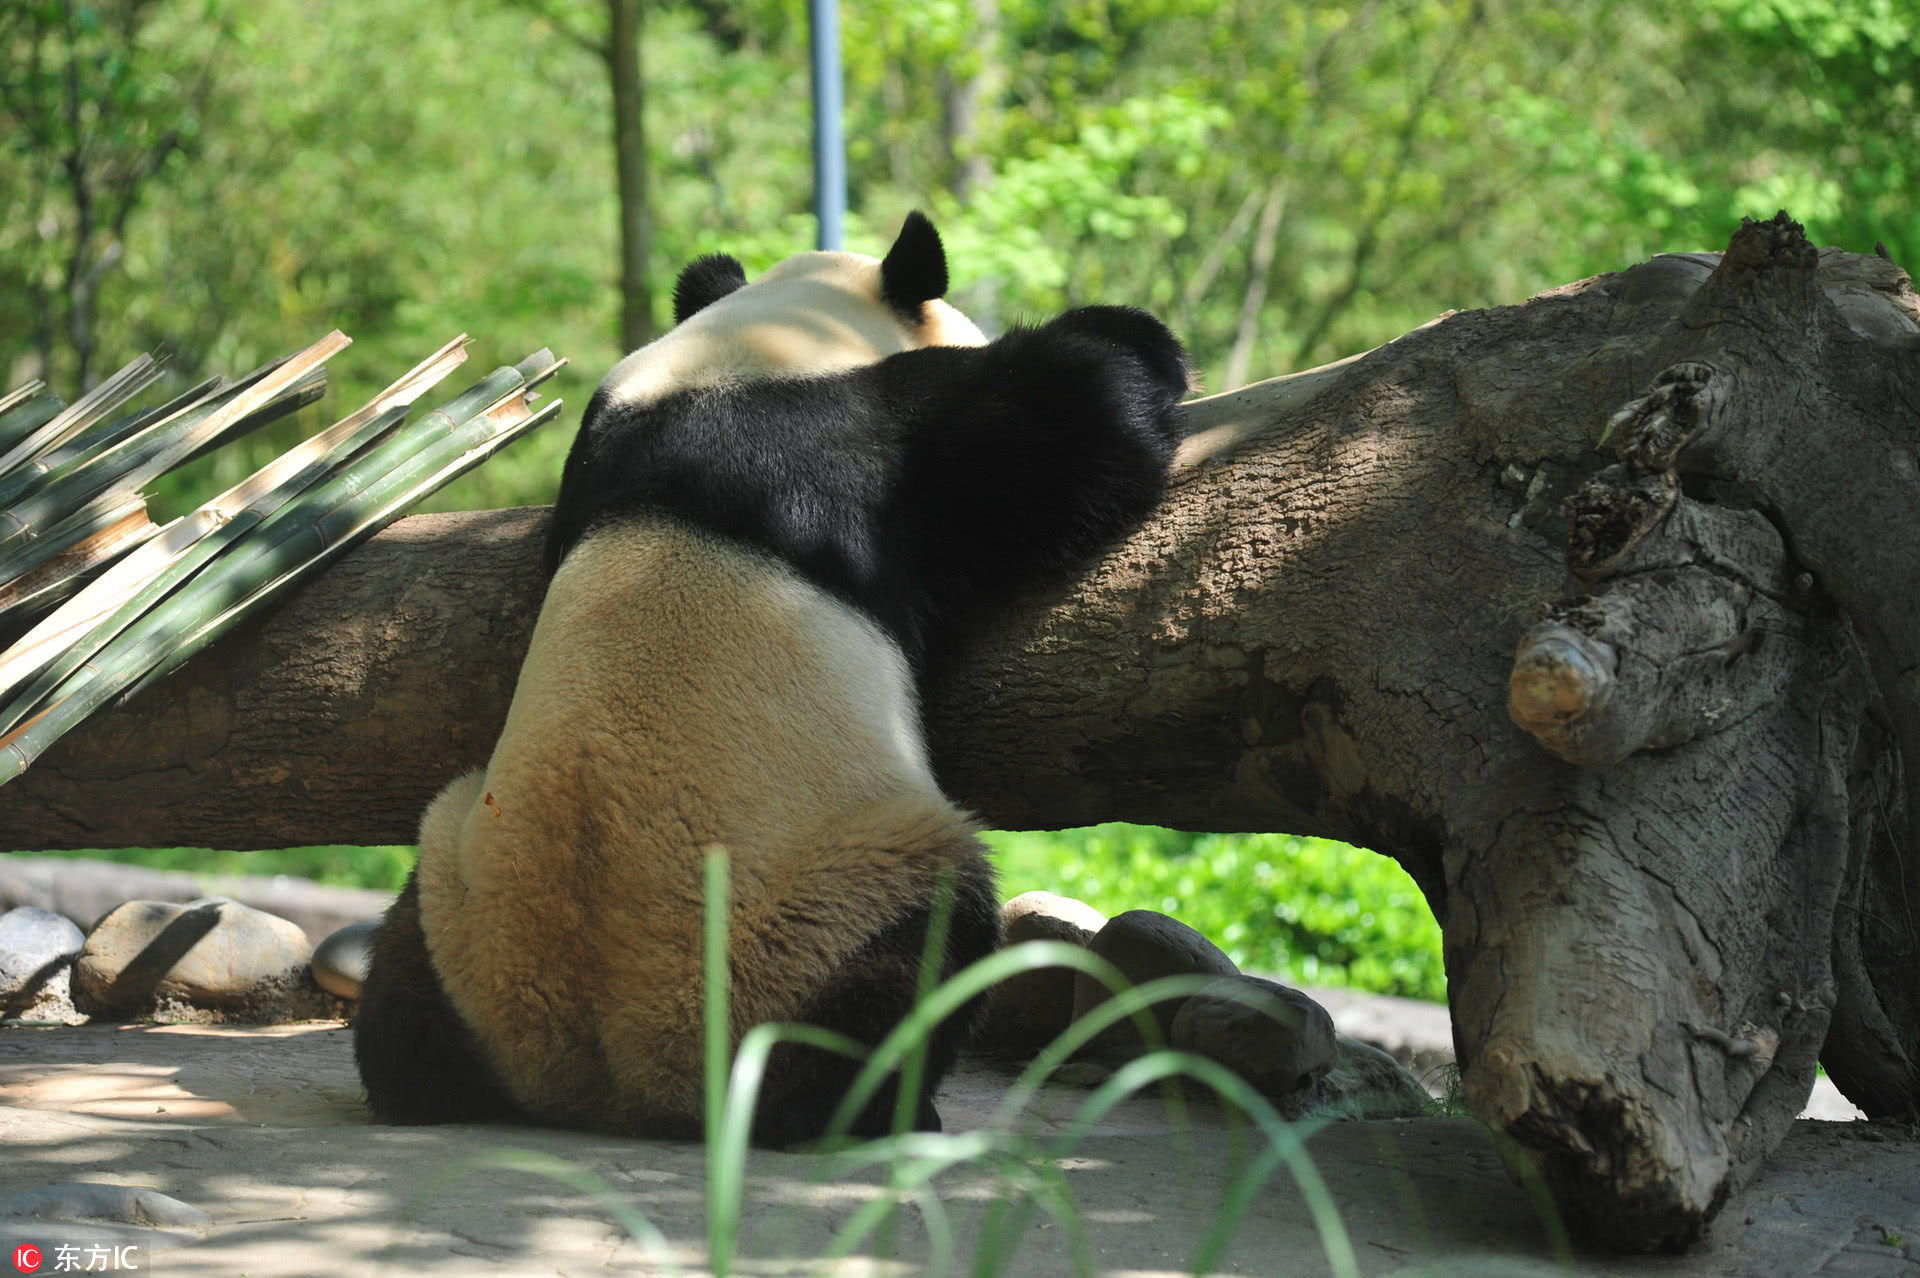 《成都大熊猫繁育研究基地：披着爱大熊猫的皮，却干着虐大熊猫的渣事》是否属实？熊猫们的生存状况如何？ - 知乎